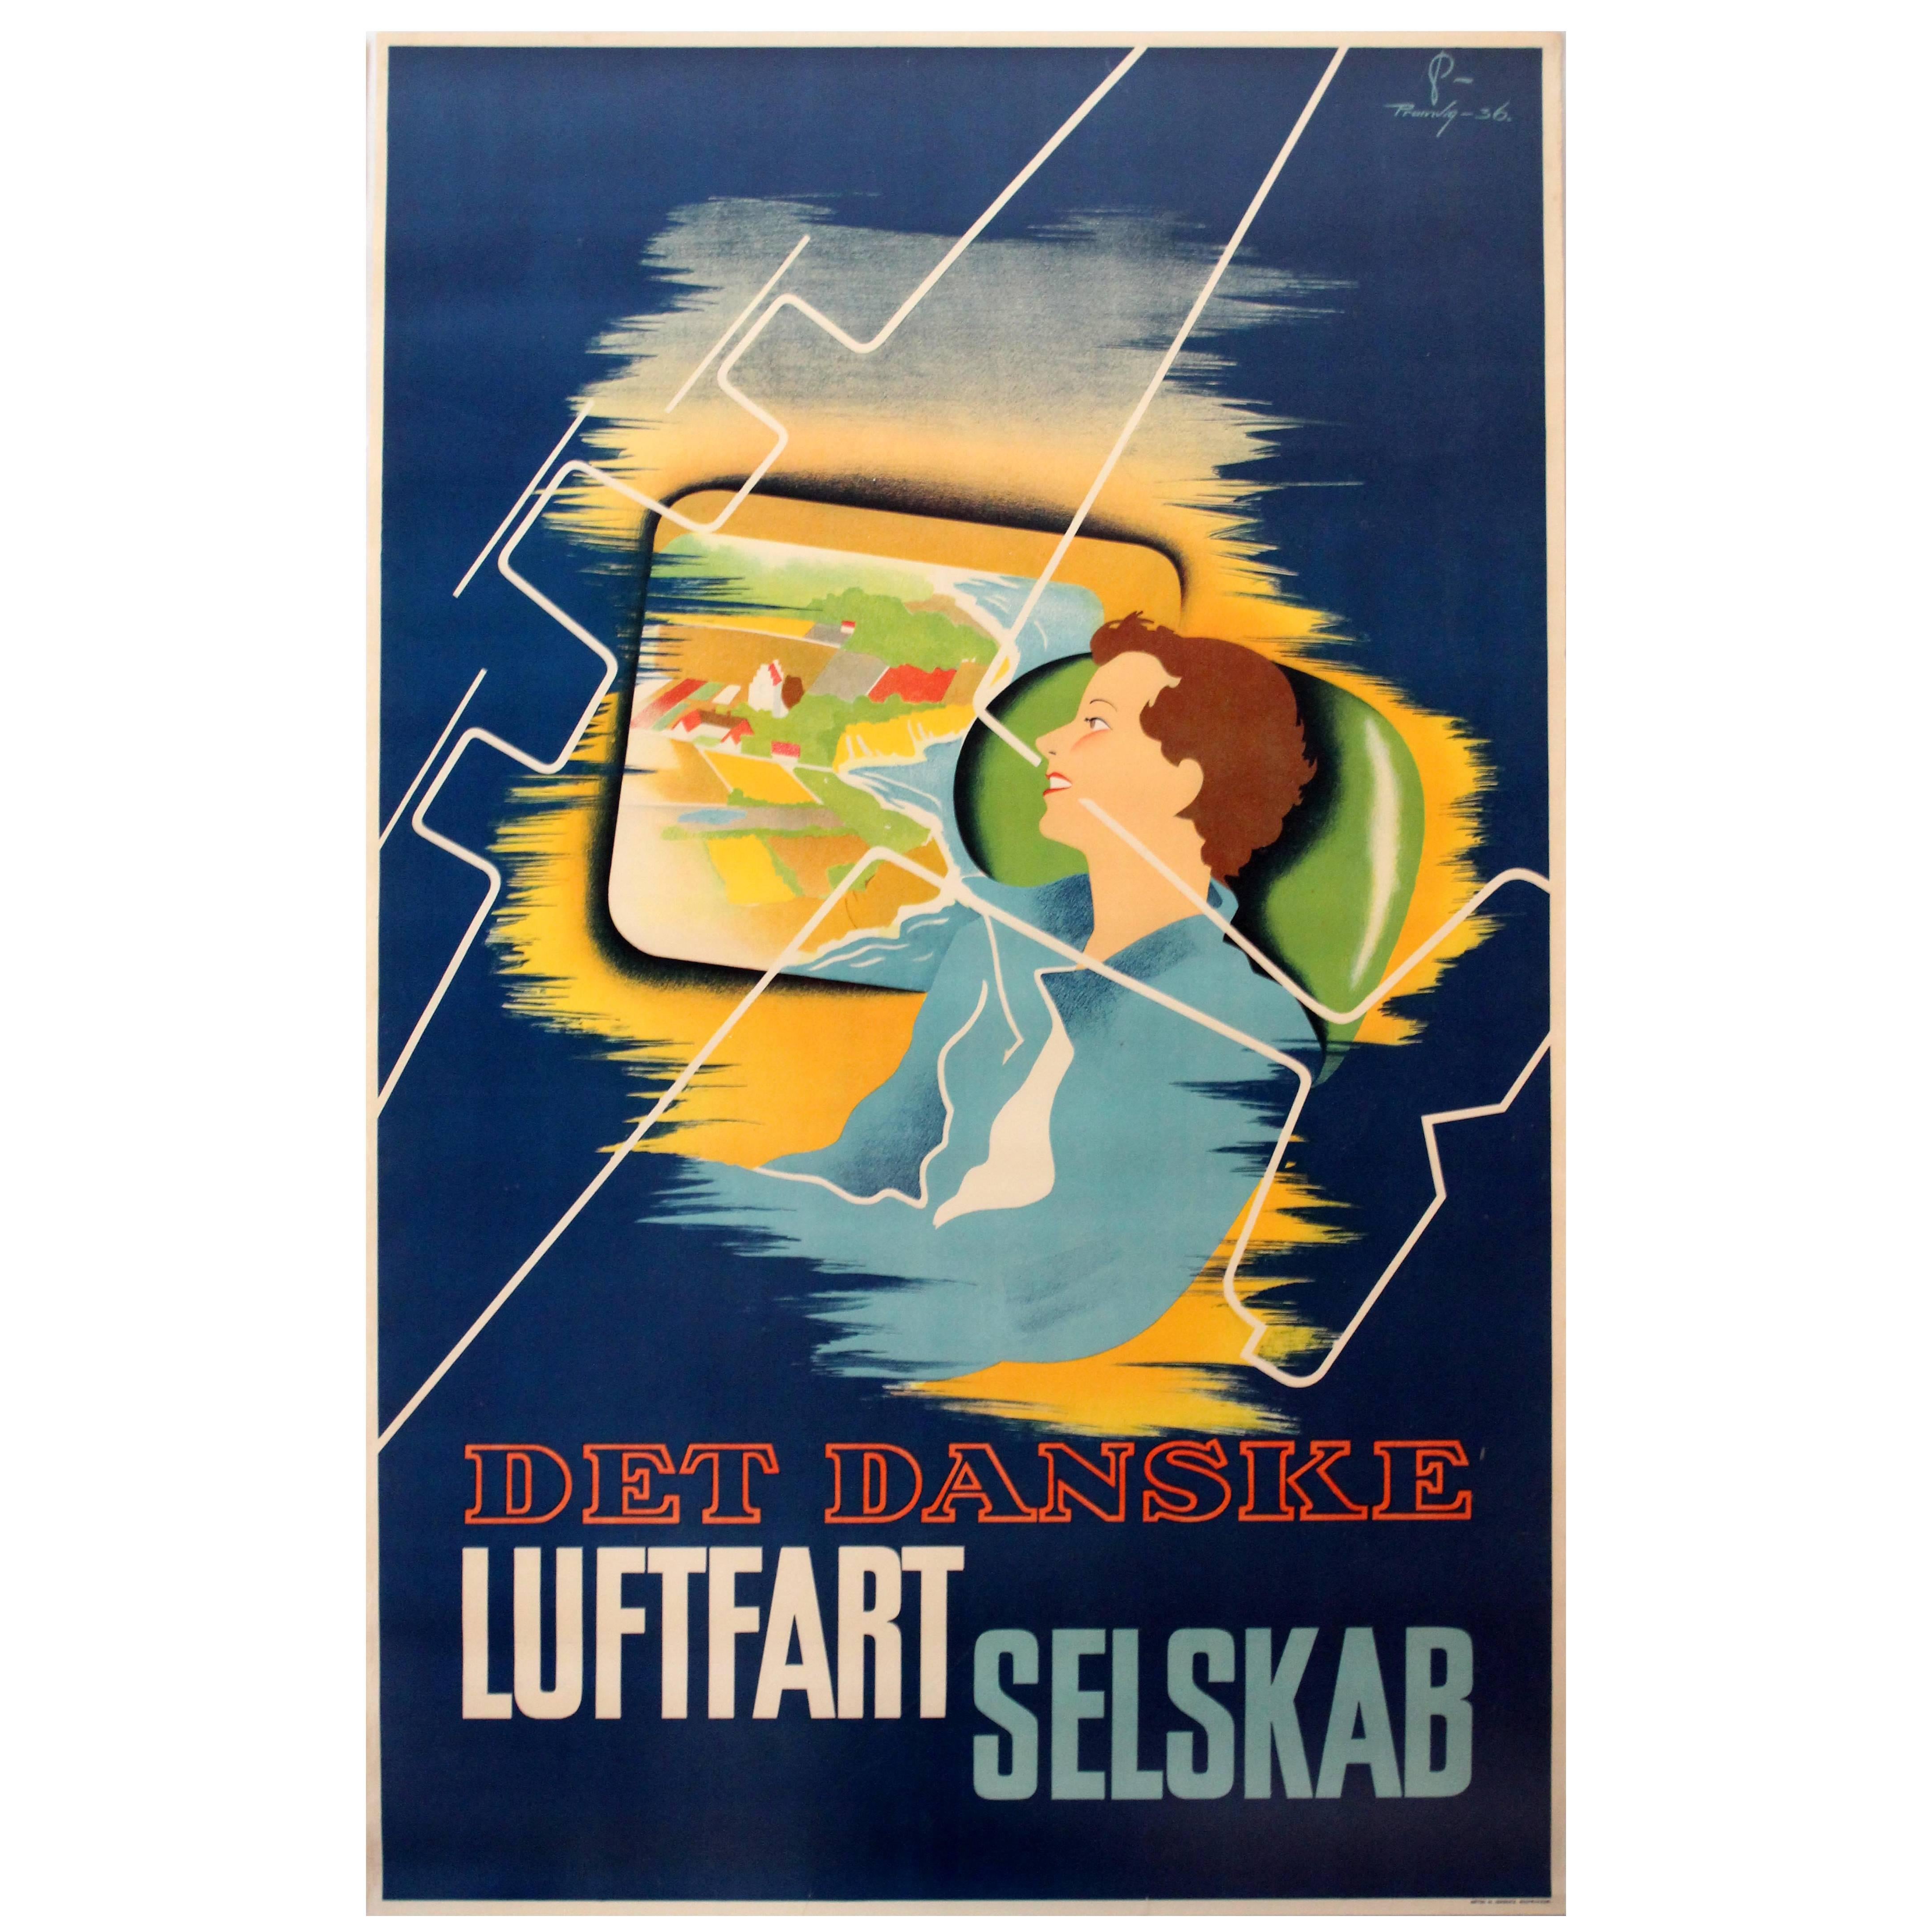 Original 1936 Danish Airlines Advertising Poster, Det Danske Luftfartselskab